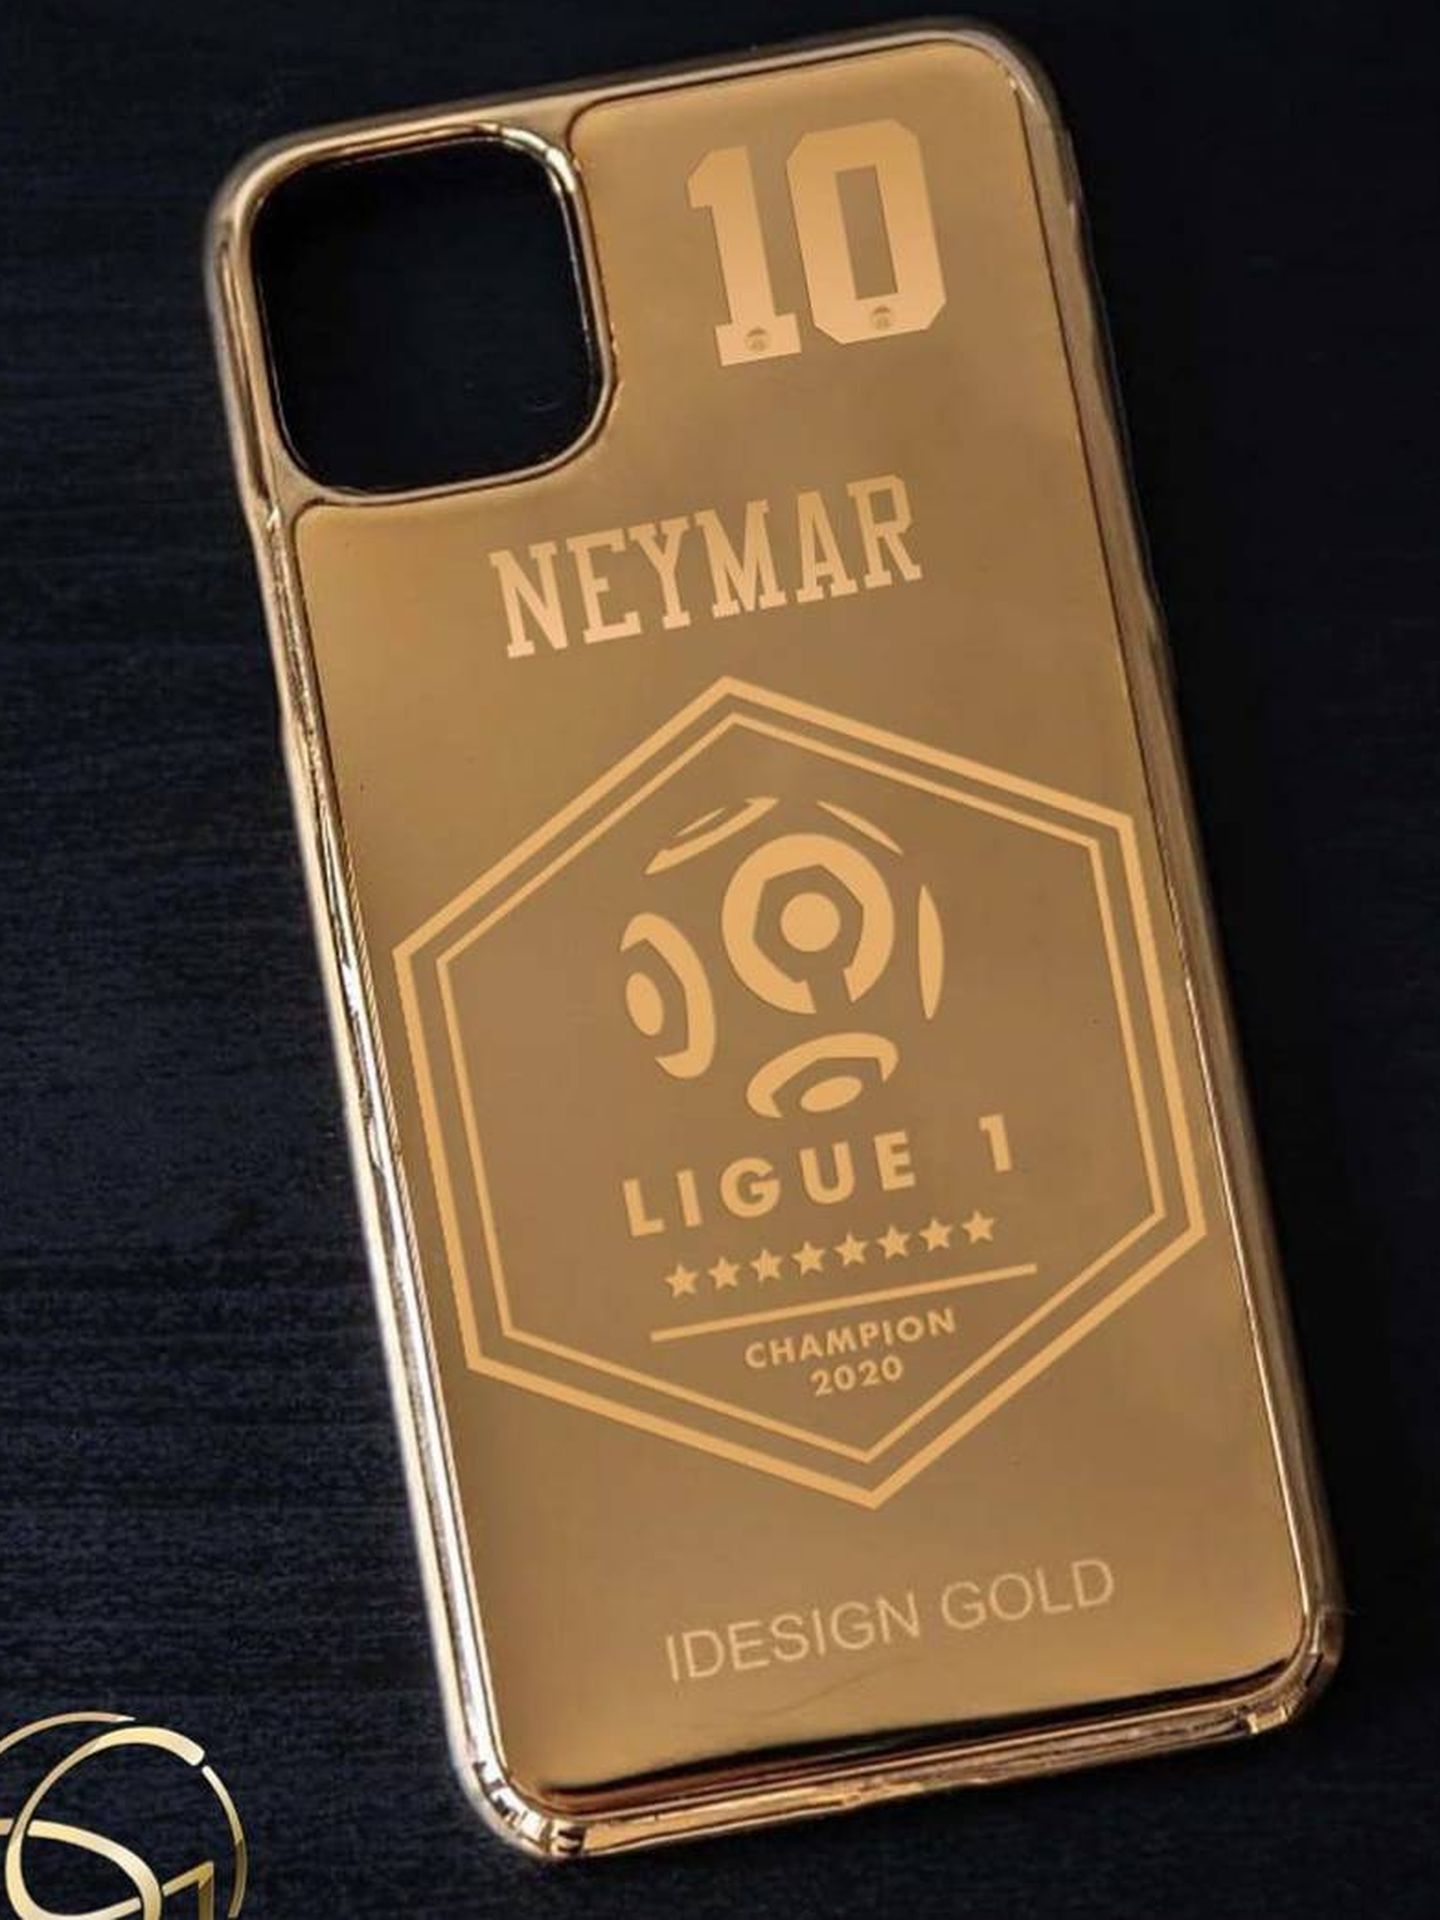 La funda de oro del móvil de Neymar personalizada. (foto idesing gold)